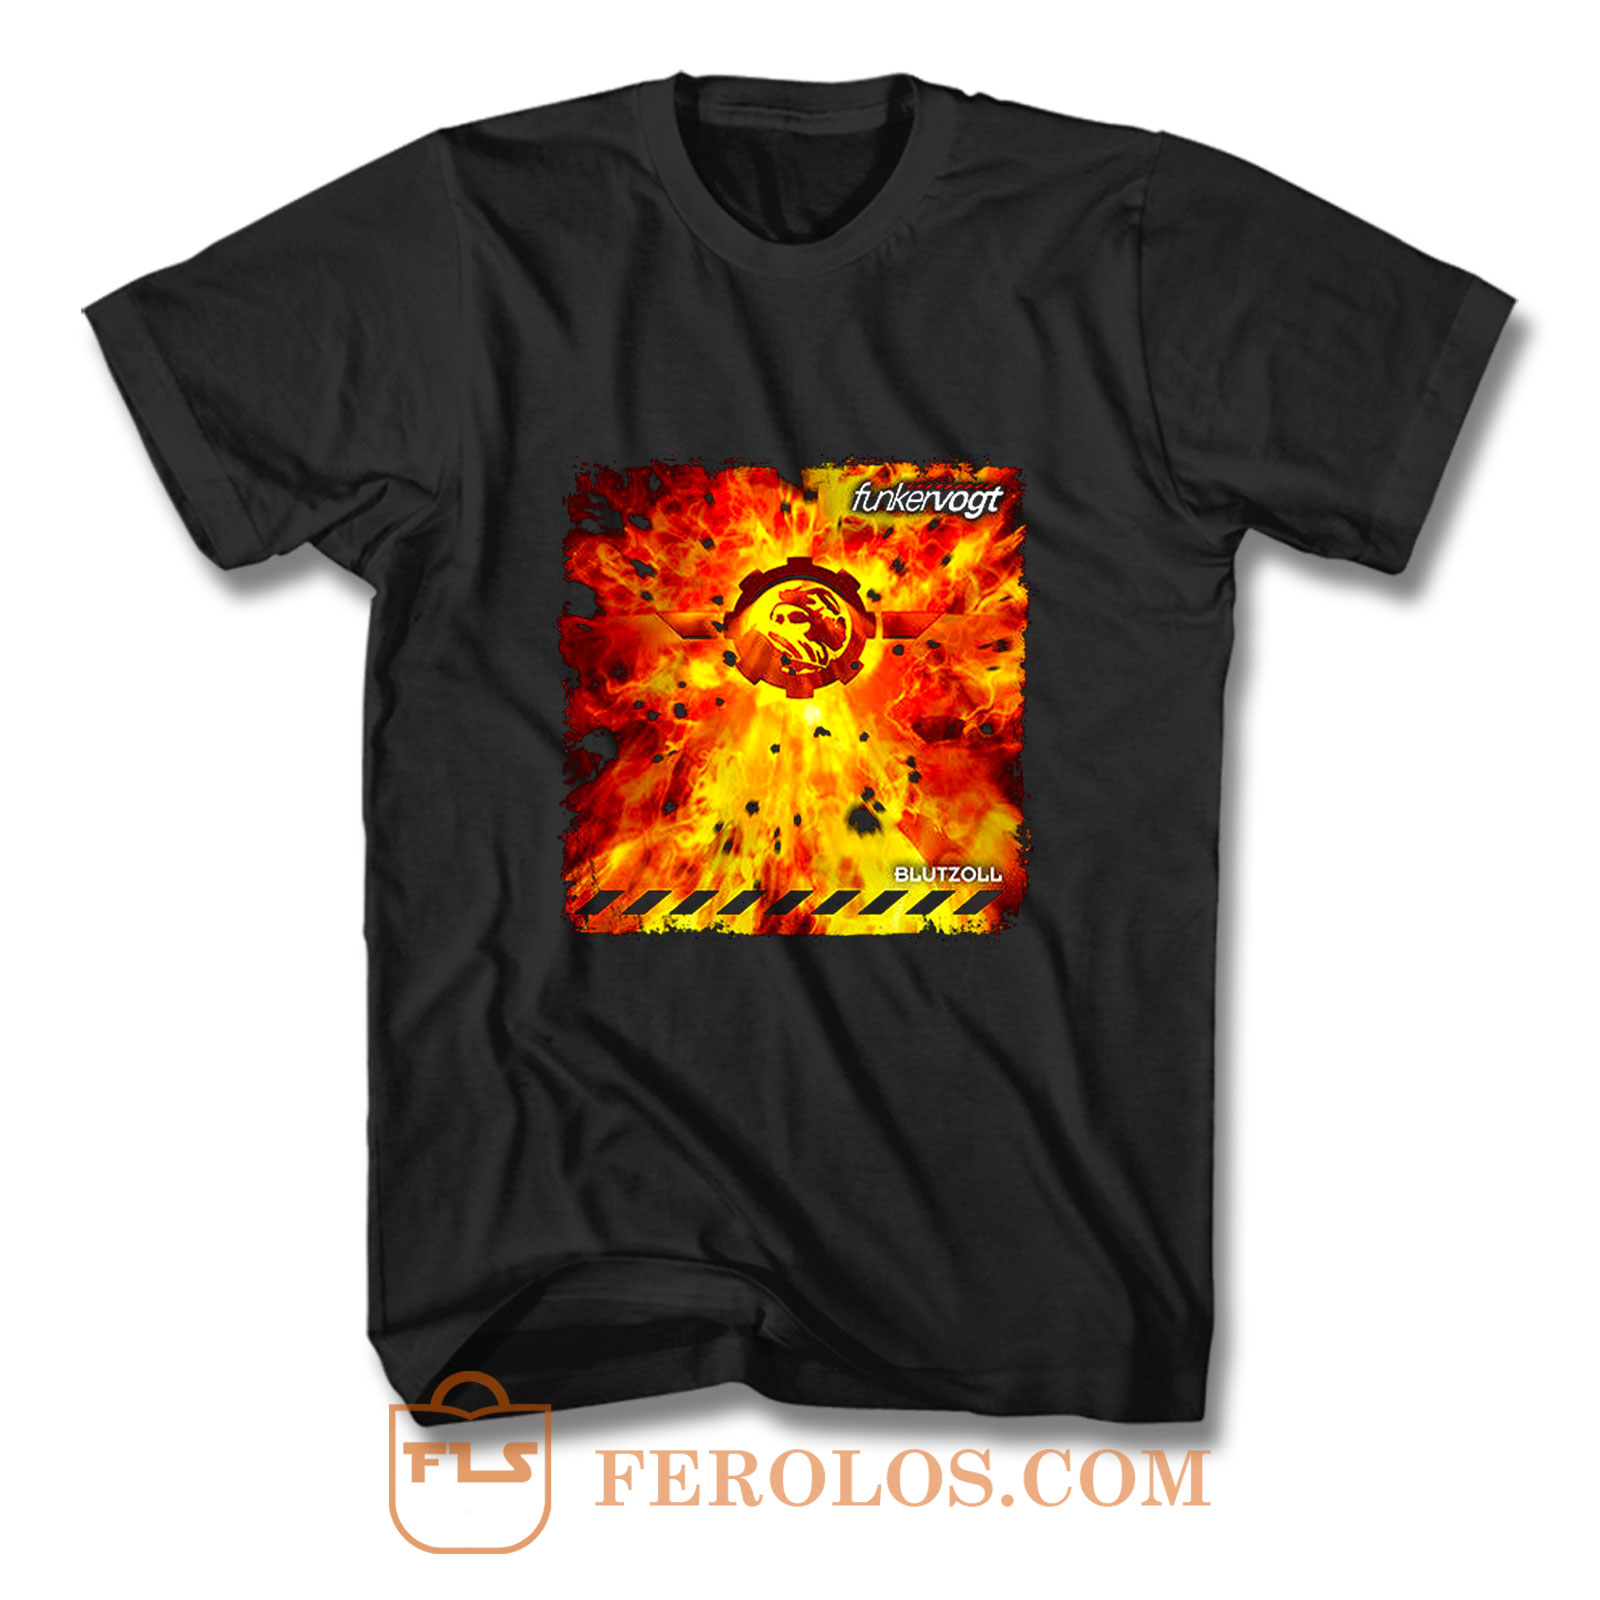 Funker Vogt - Blutzoll T Shirt | FEROLOS.COM